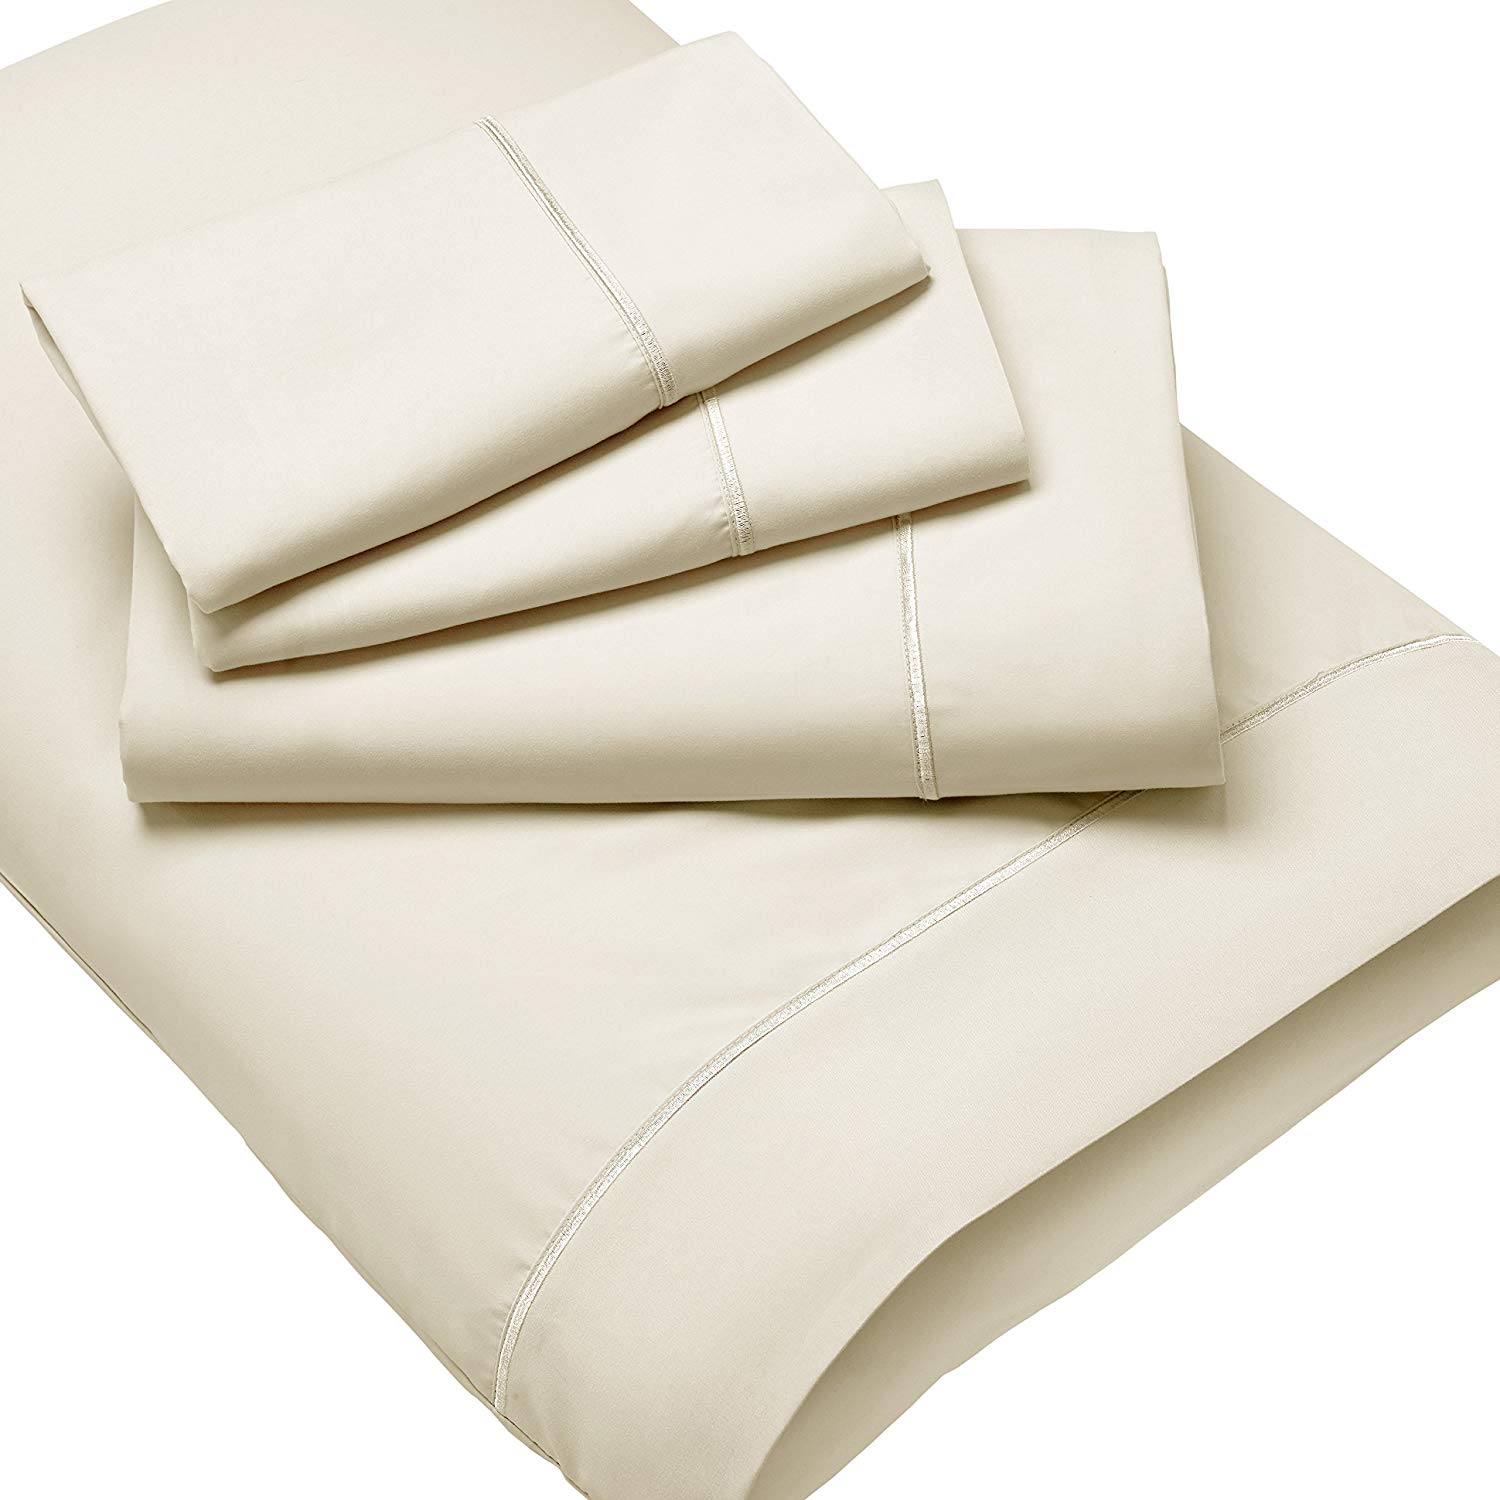 New Purecare Luxury Microfiber Wrinkle Resistant Ivory Sheet Set Natychmiastowa dostawa w specjalnej cenie